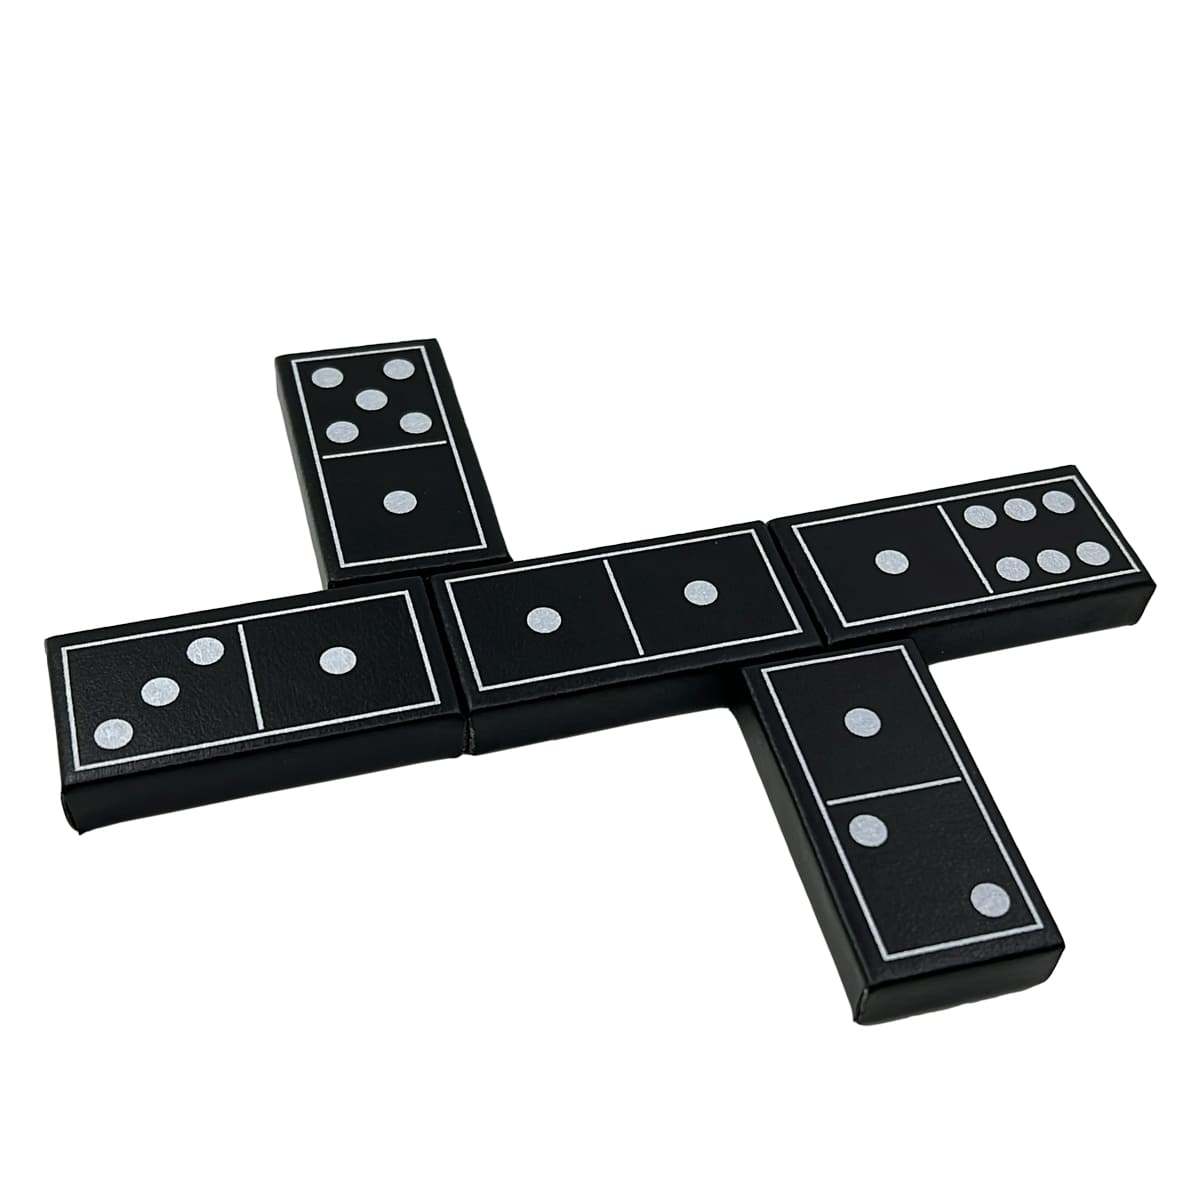 أطقم دومينو الفاخرة Double Six Standard 28 Tiles مع حقيبة جلدية سوداء